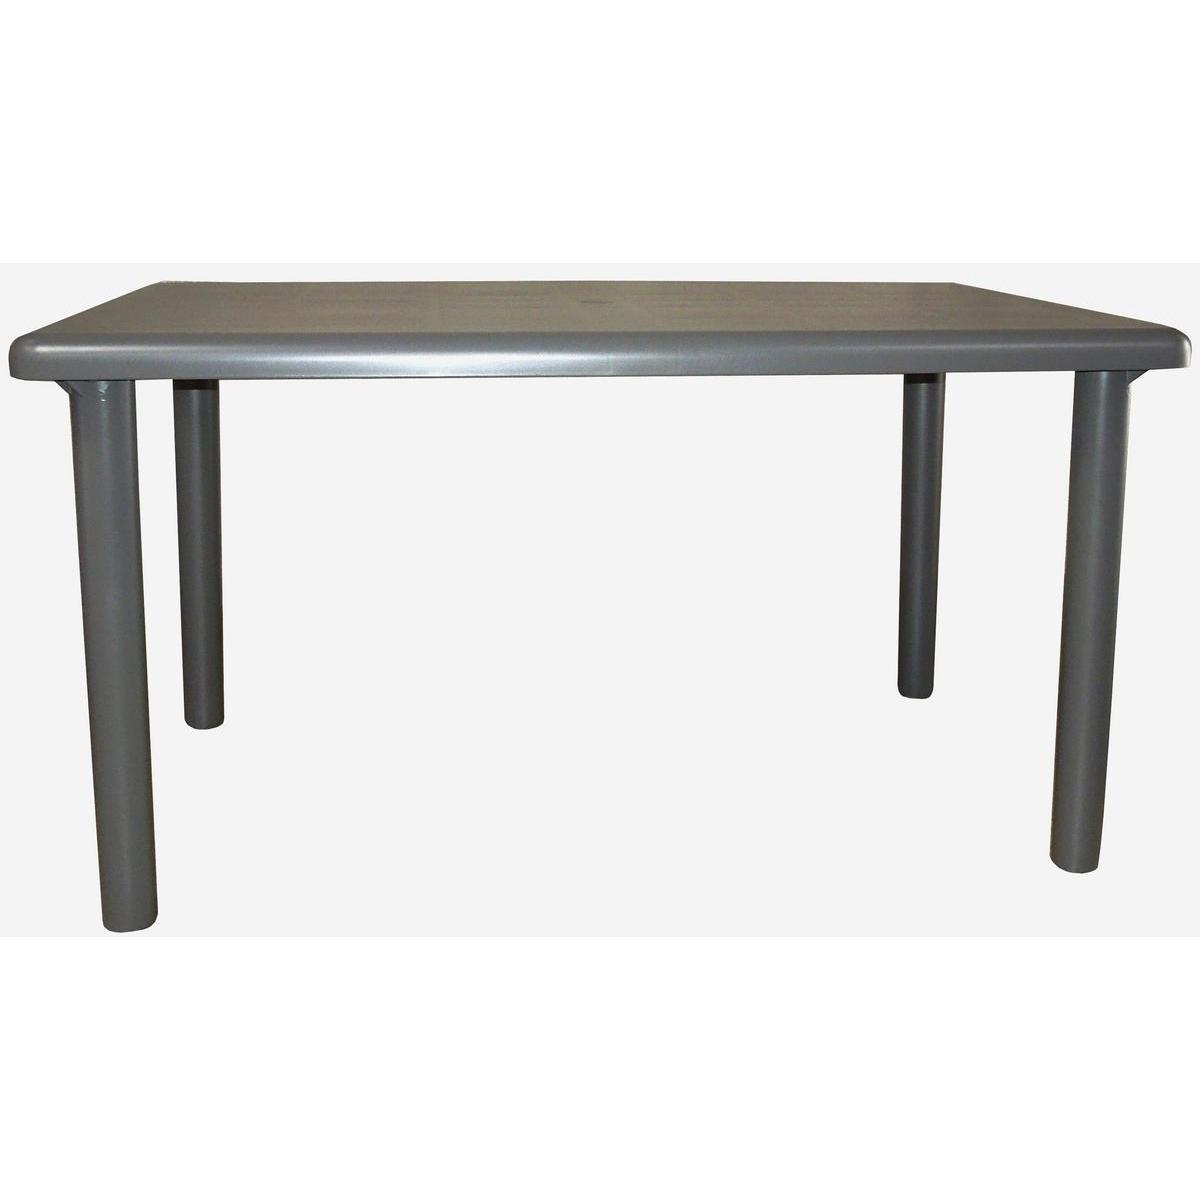 Table Olot - Plastique - 90 x 140 x H 73 cm - Anthracite